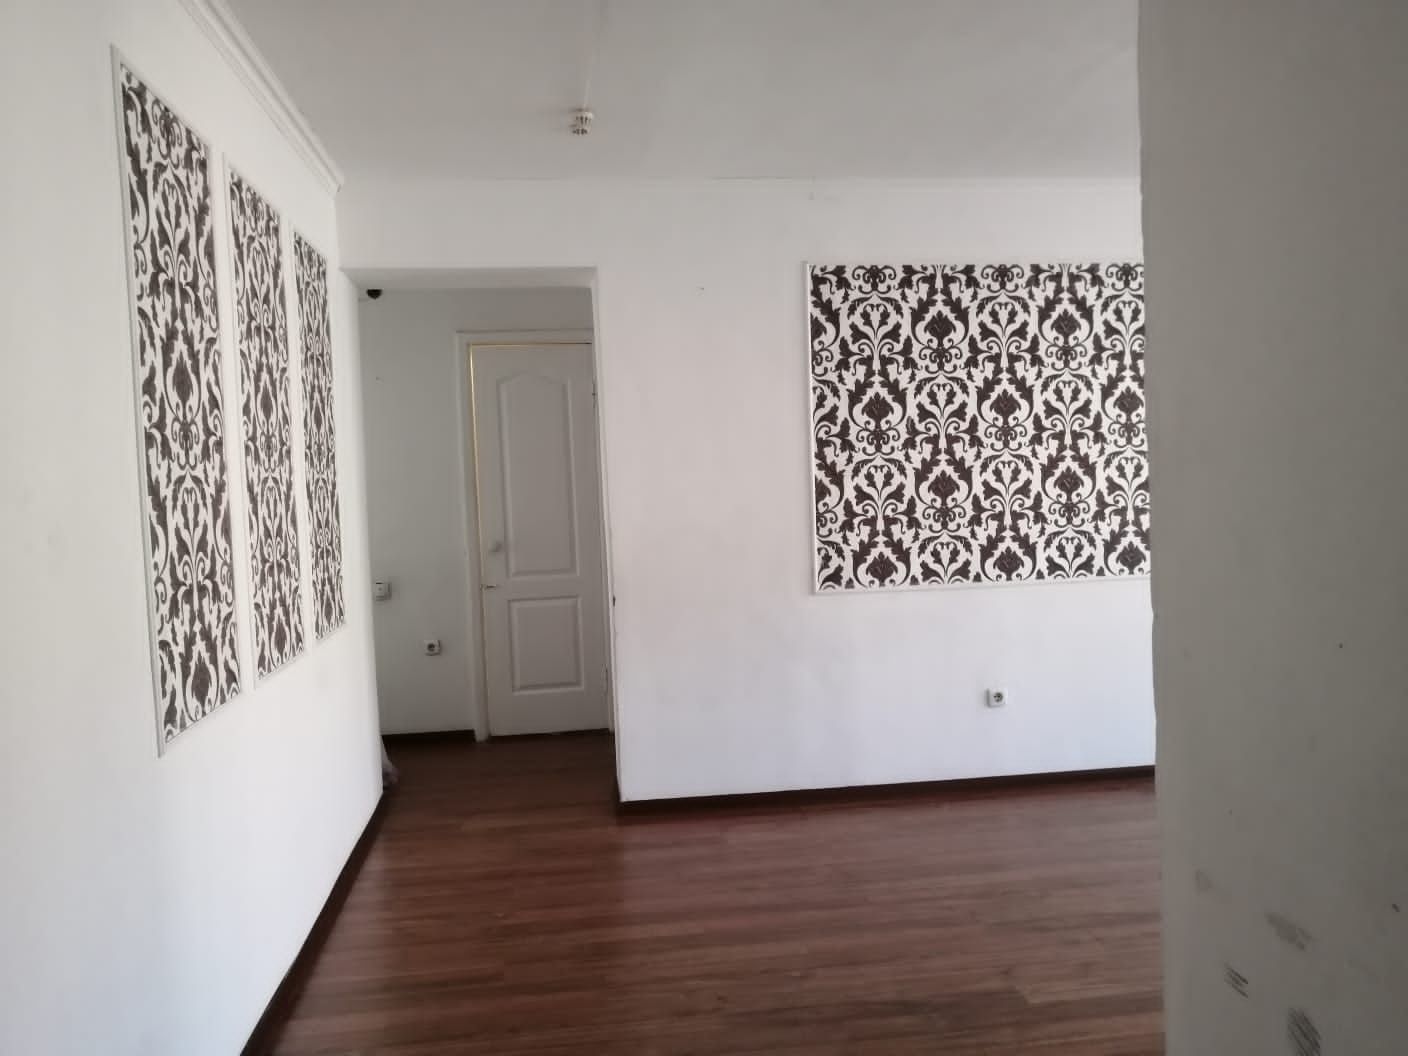 Продам квартиру в городе Павлодар, в усольском микрорайоне